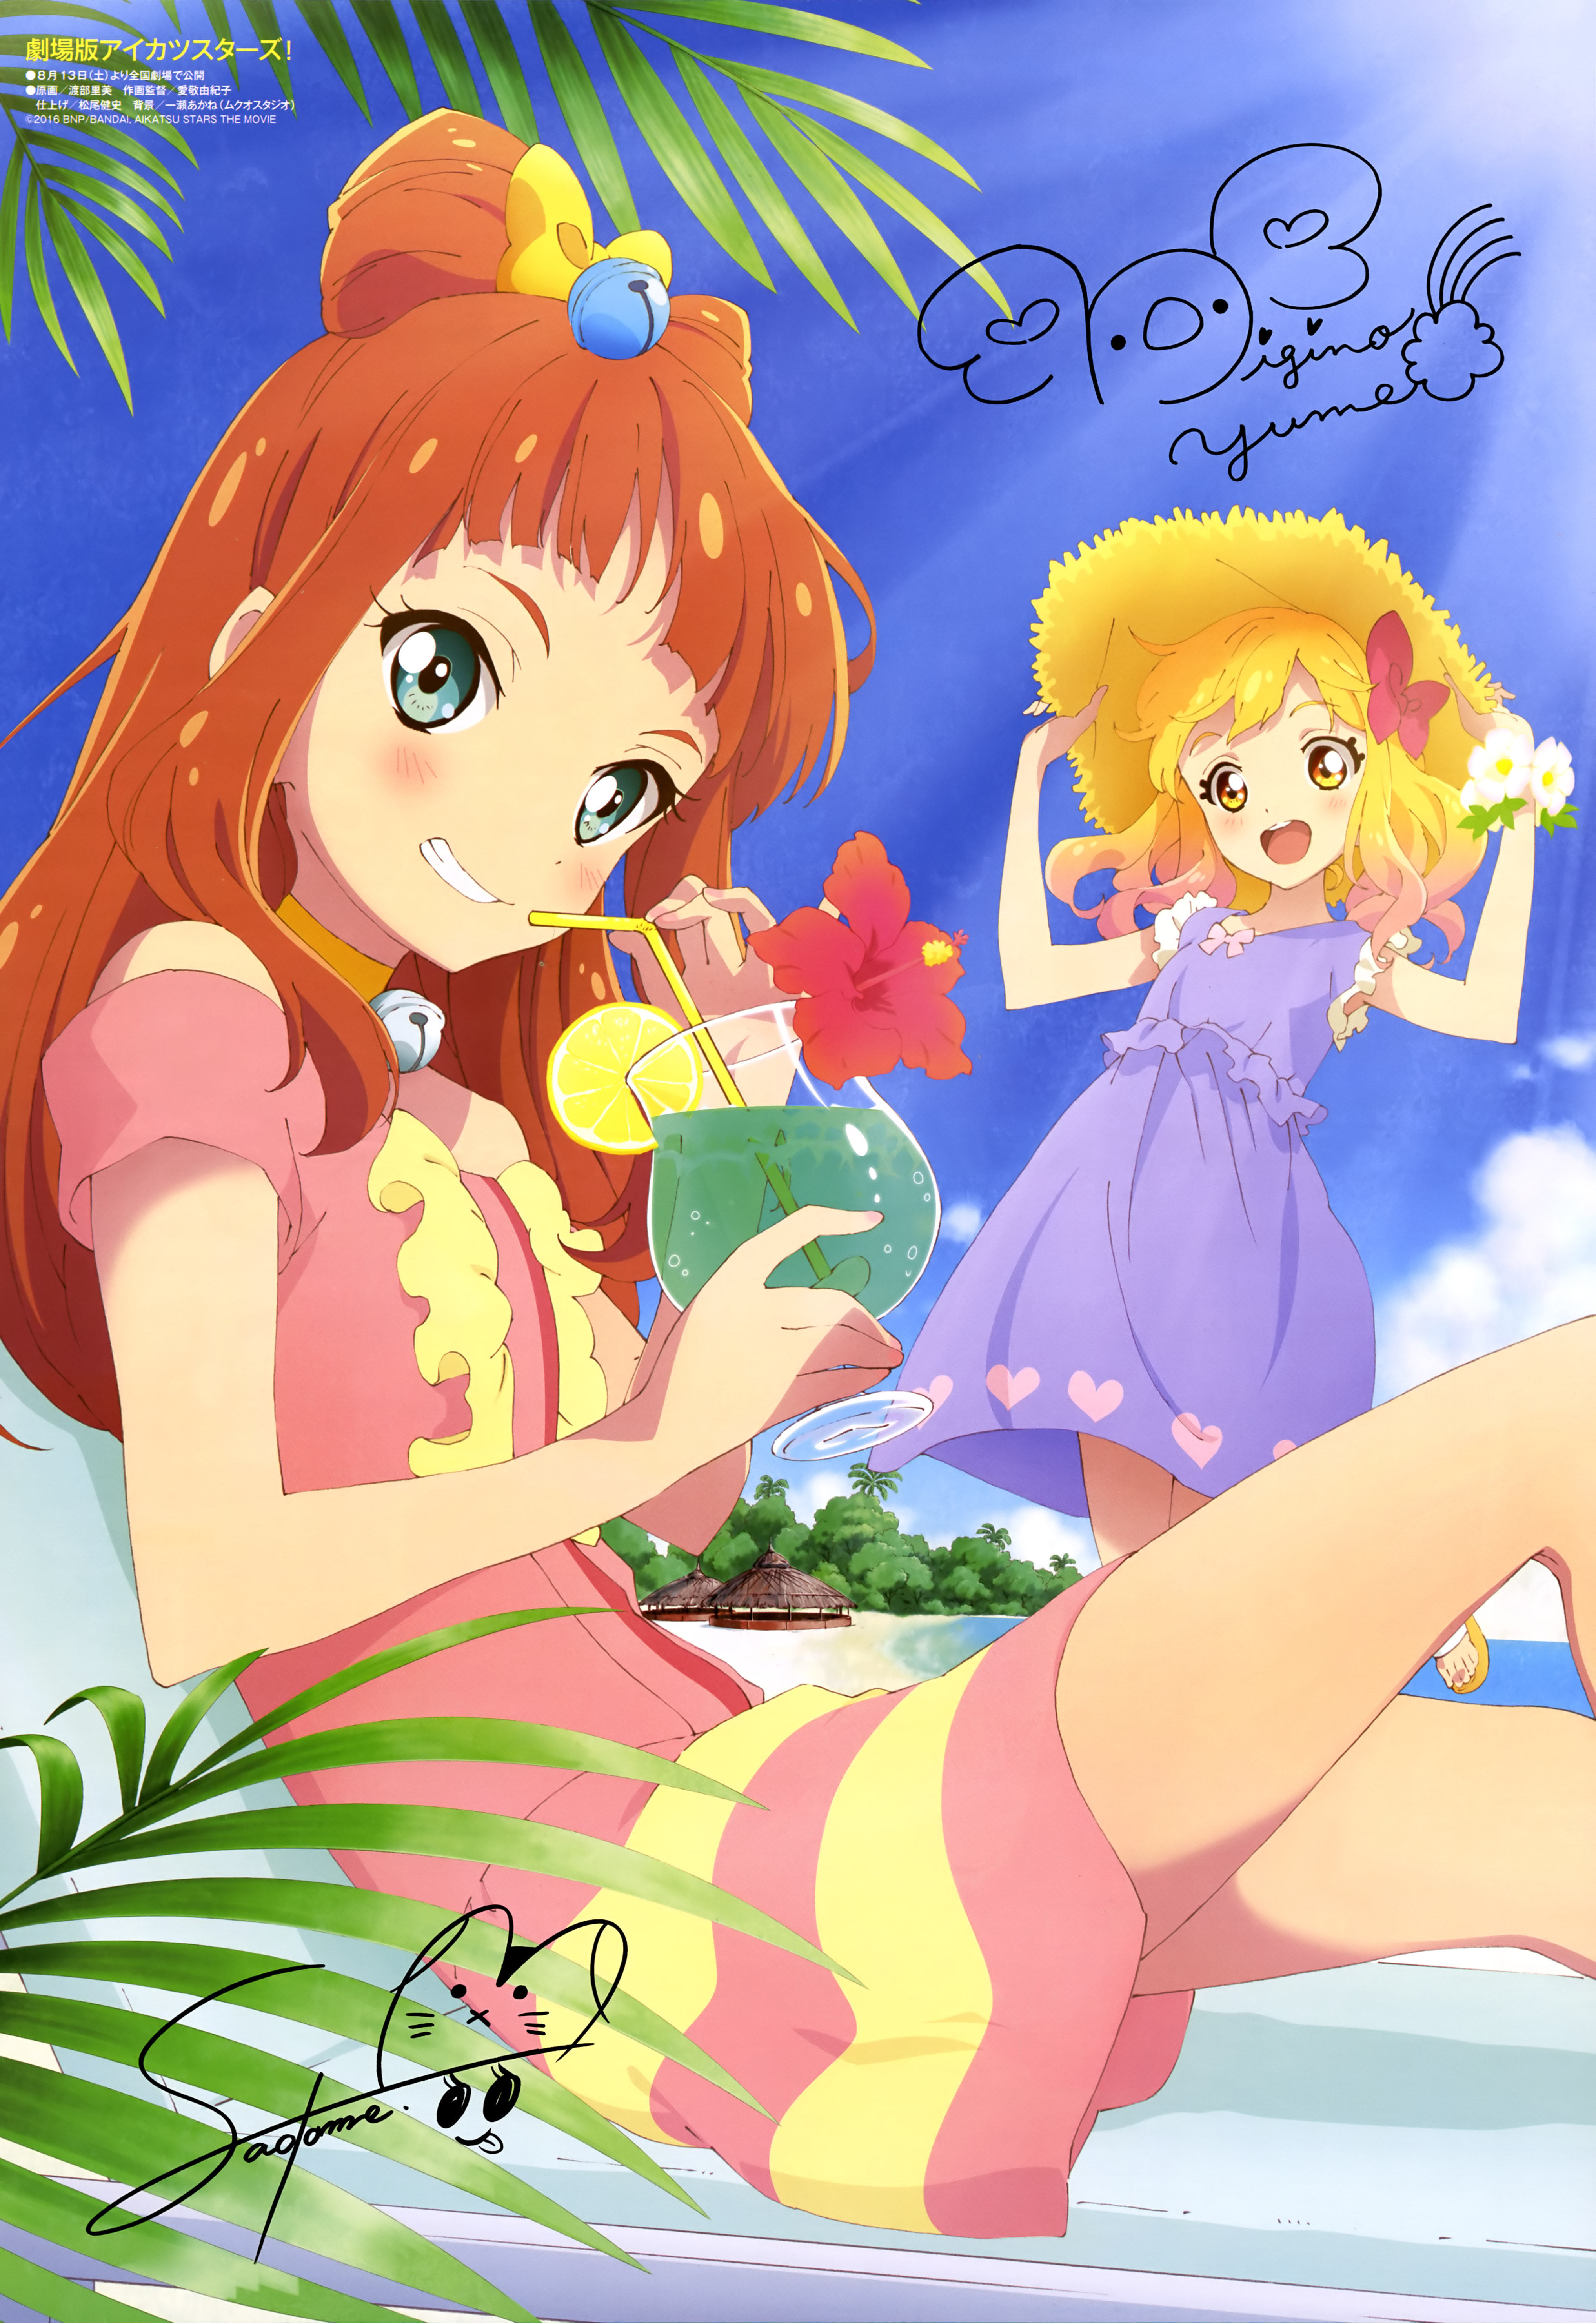 Saotome Ako (Ako Saotome) Stars! Anime Image Board